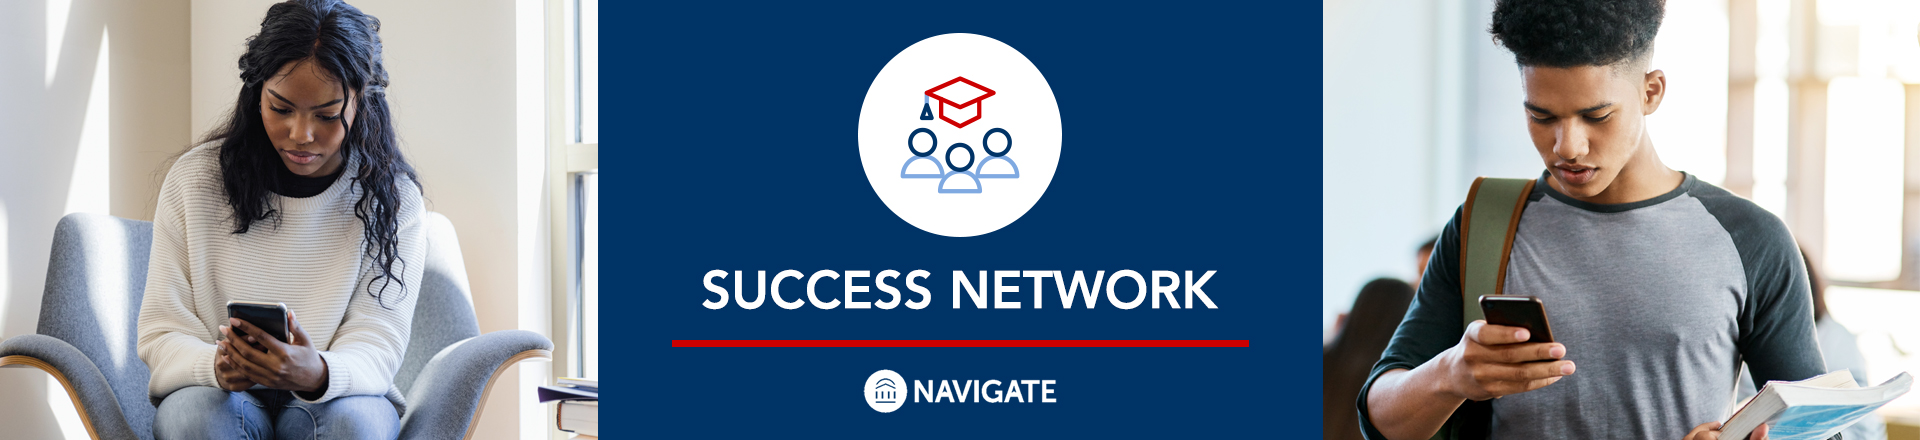 Success Network Banner